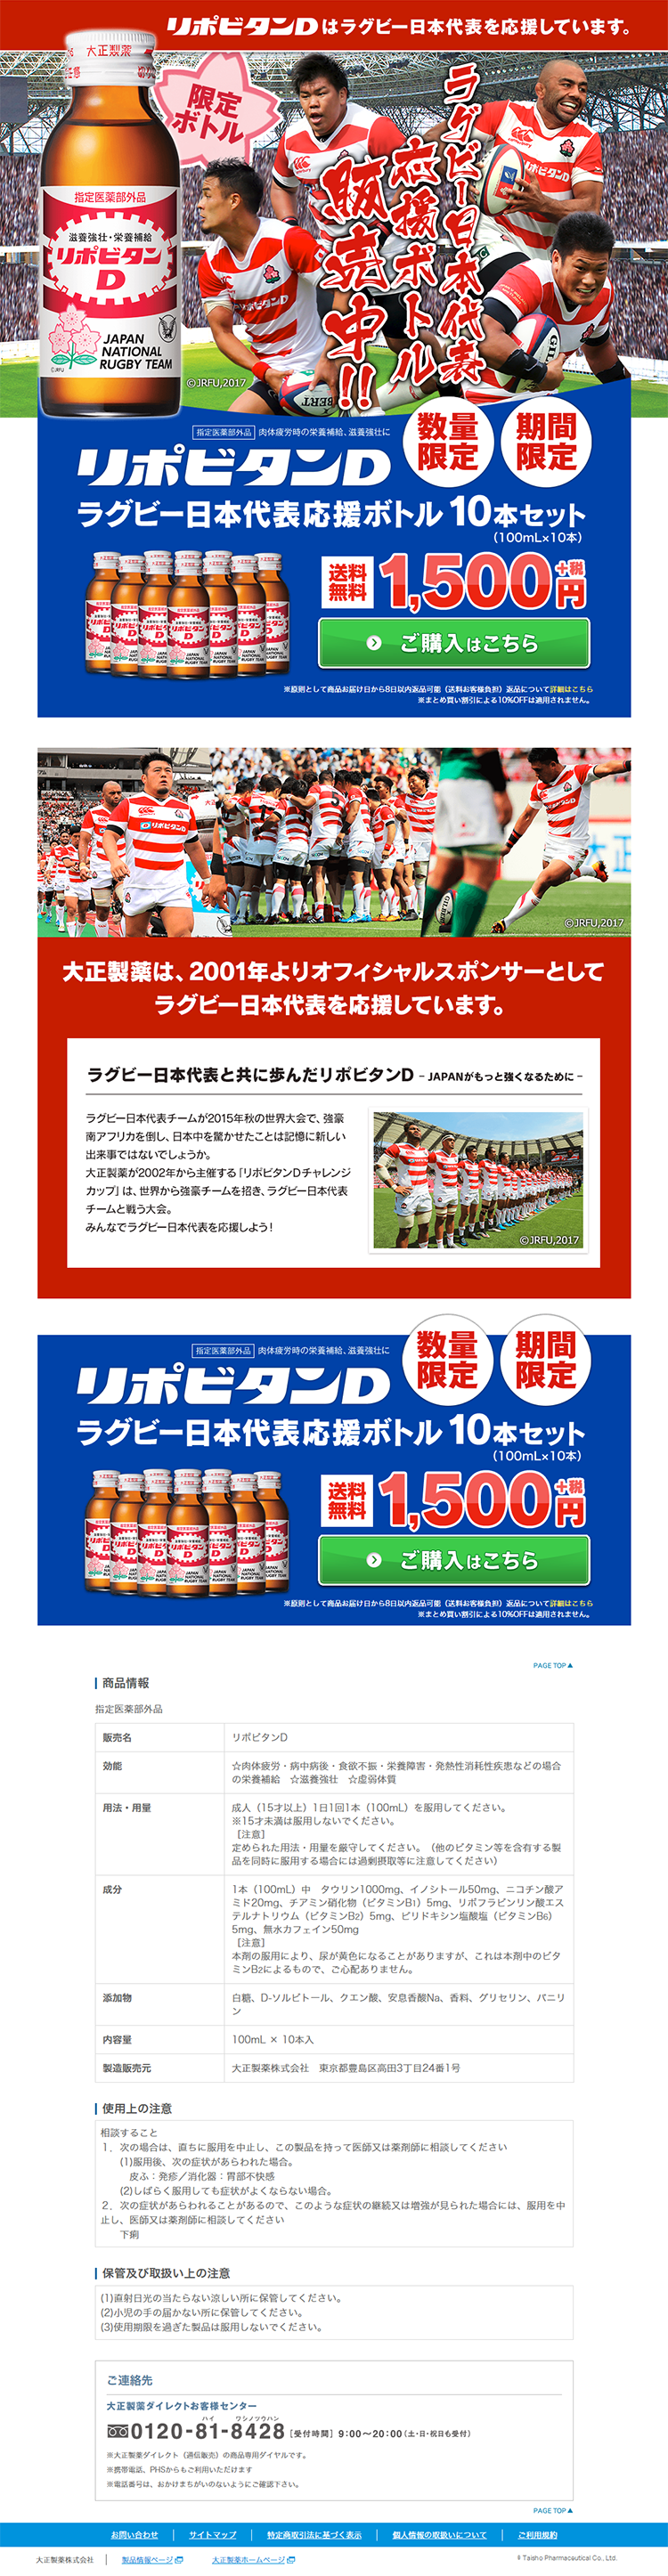 リポビタンD ラグビー日本代表応援ボトル_pc_1